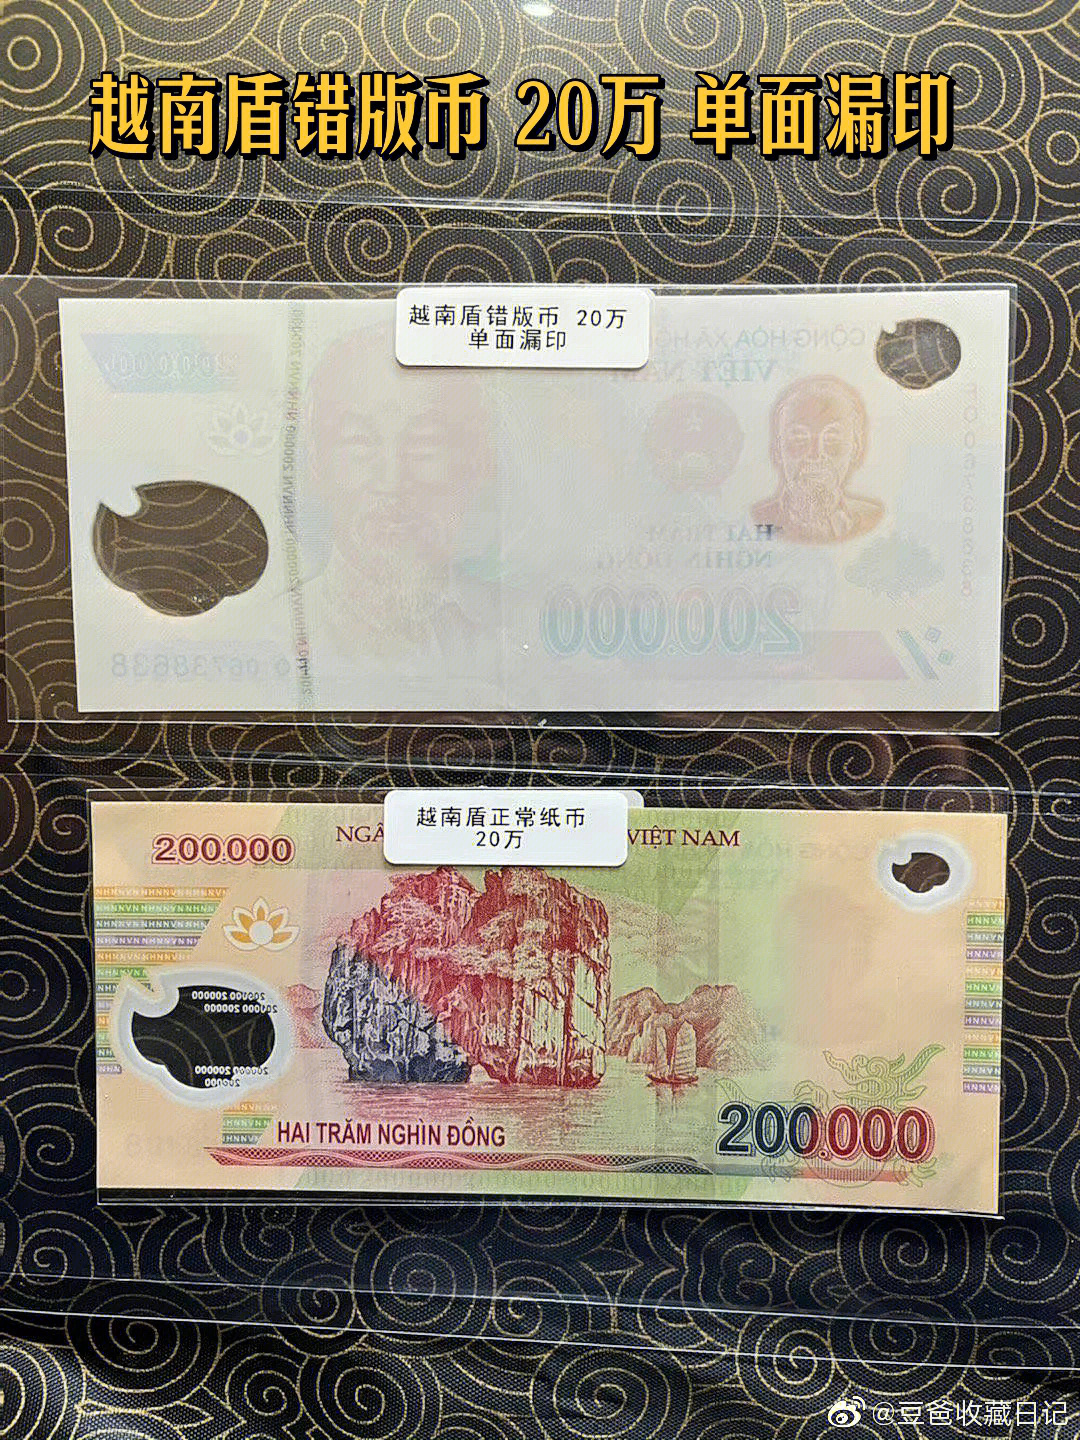 目前尚在流通中的未使用越南盾塑料钞,面值20万盾,背面原本应该是下龙